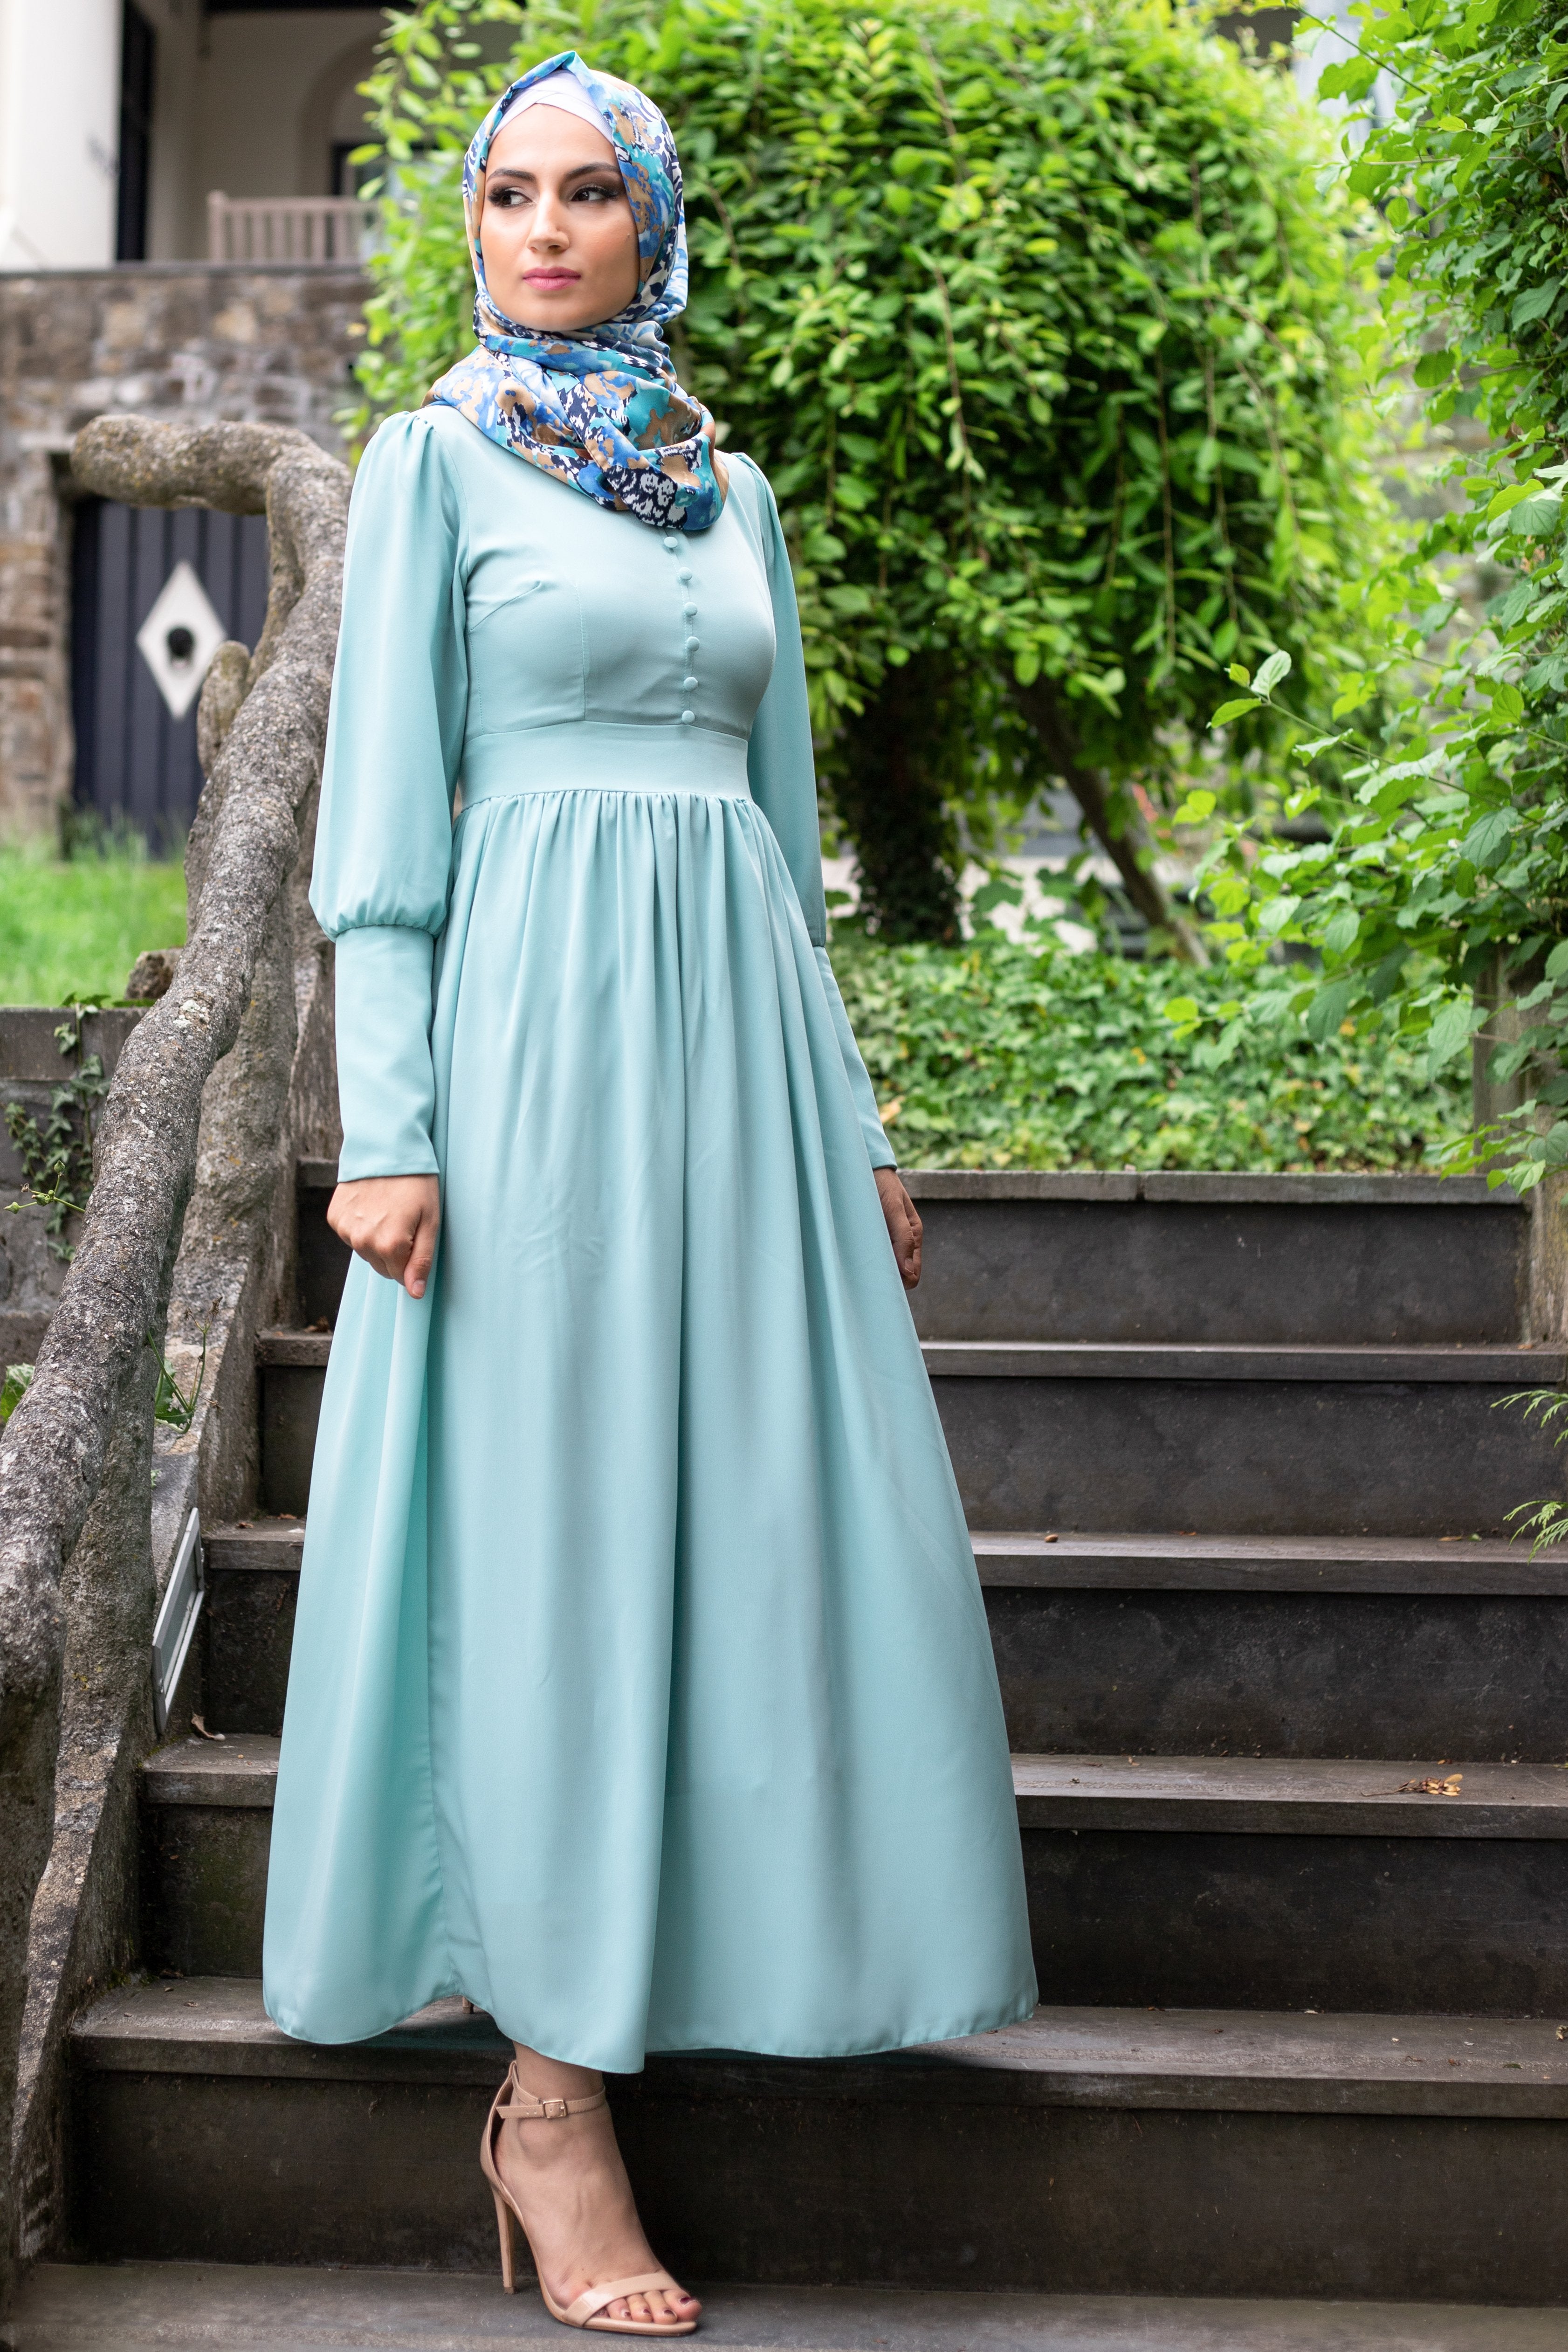 Schlichtes elegantes Kleid | Komplett gefüttert | Himmelblaue Farbe